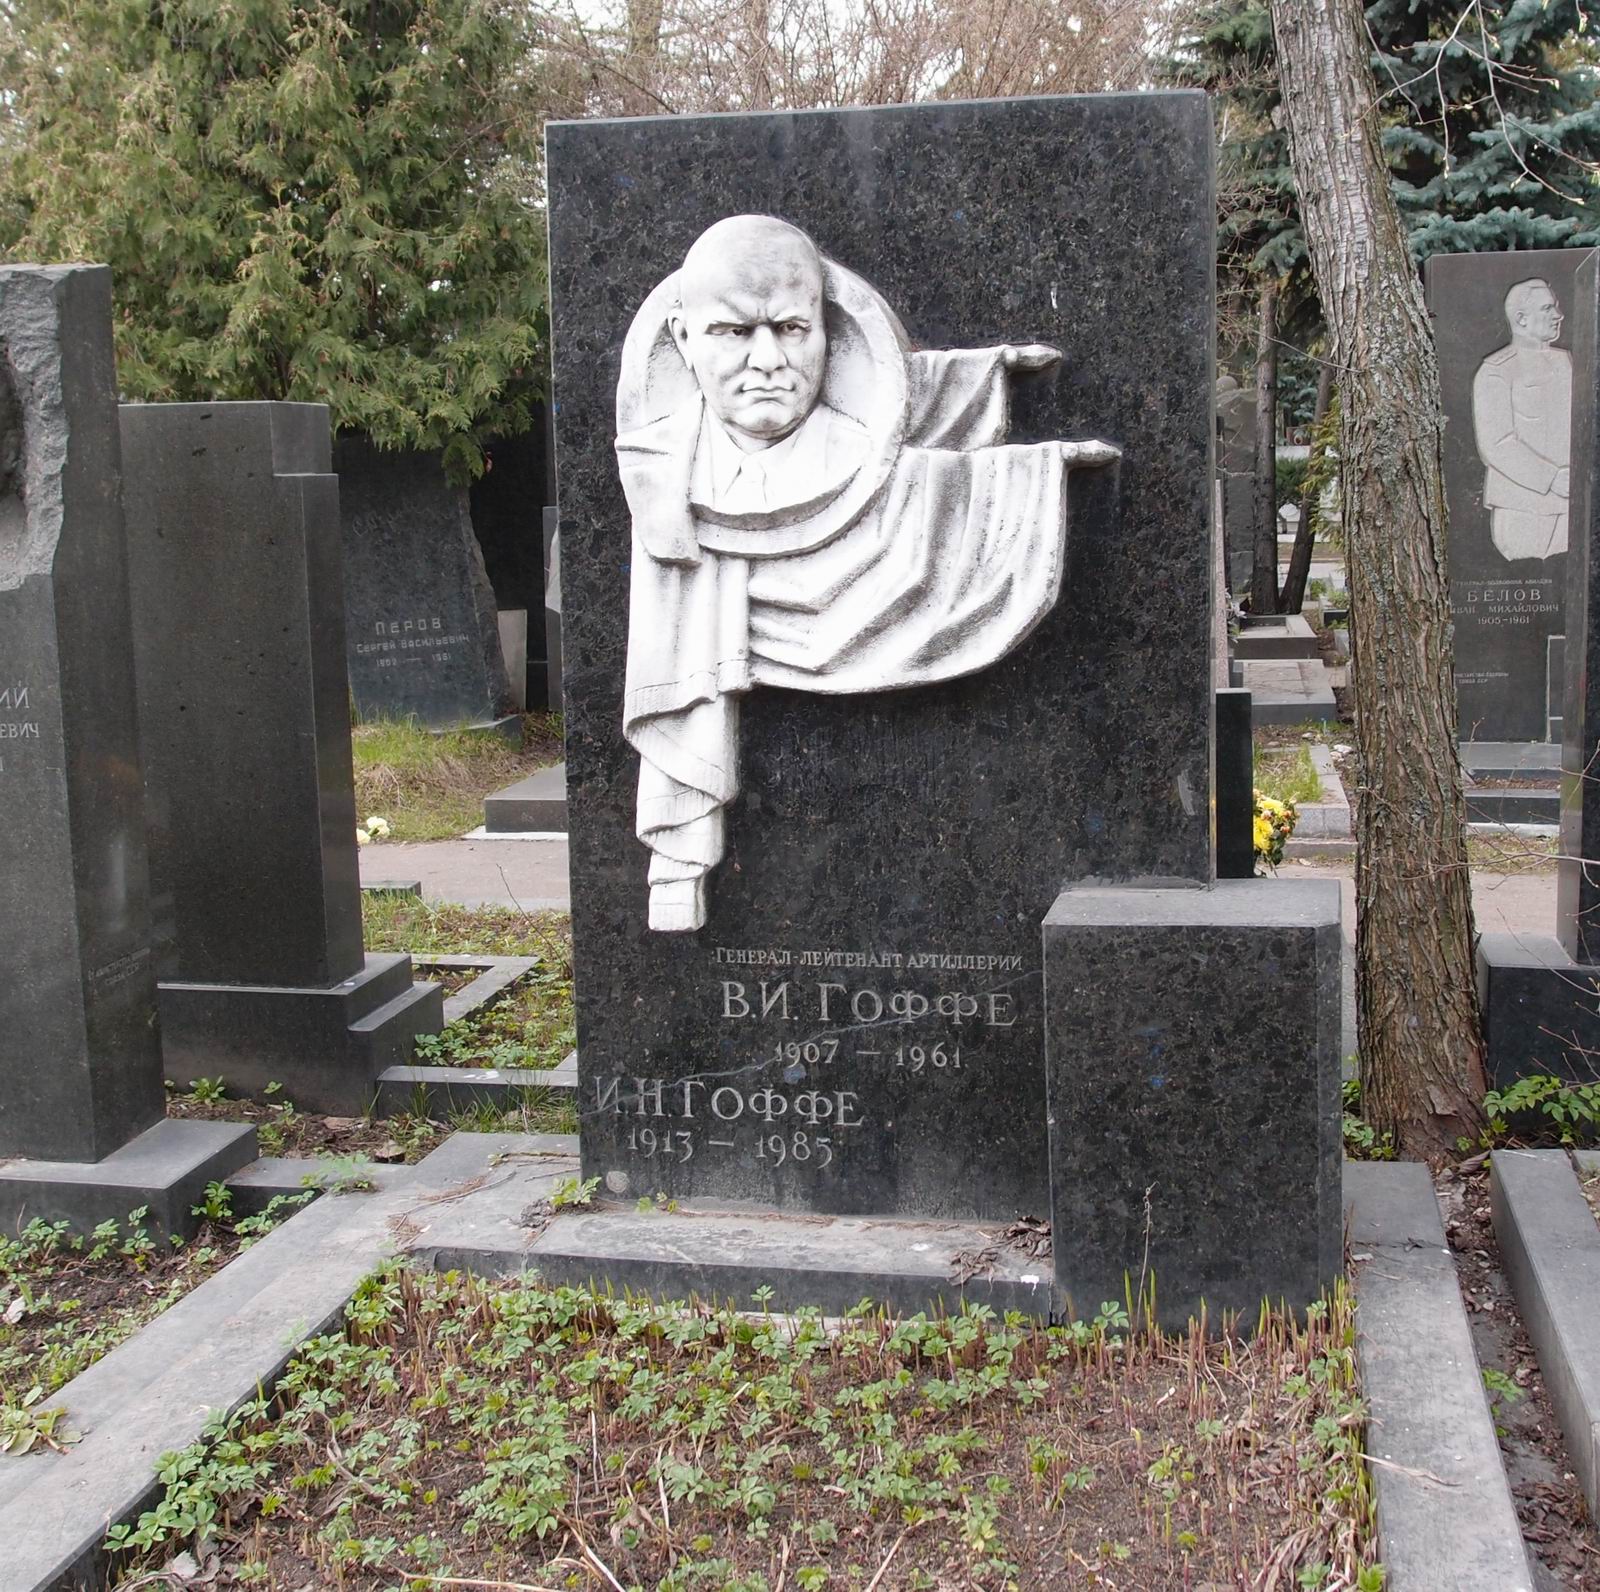 Памятник на могиле Гоффе В.И. (1907–1961), на Новодевичьем кладбище (8–12–3). Нажмите левую кнопку мыши чтобы увидеть фрагмент памятника.